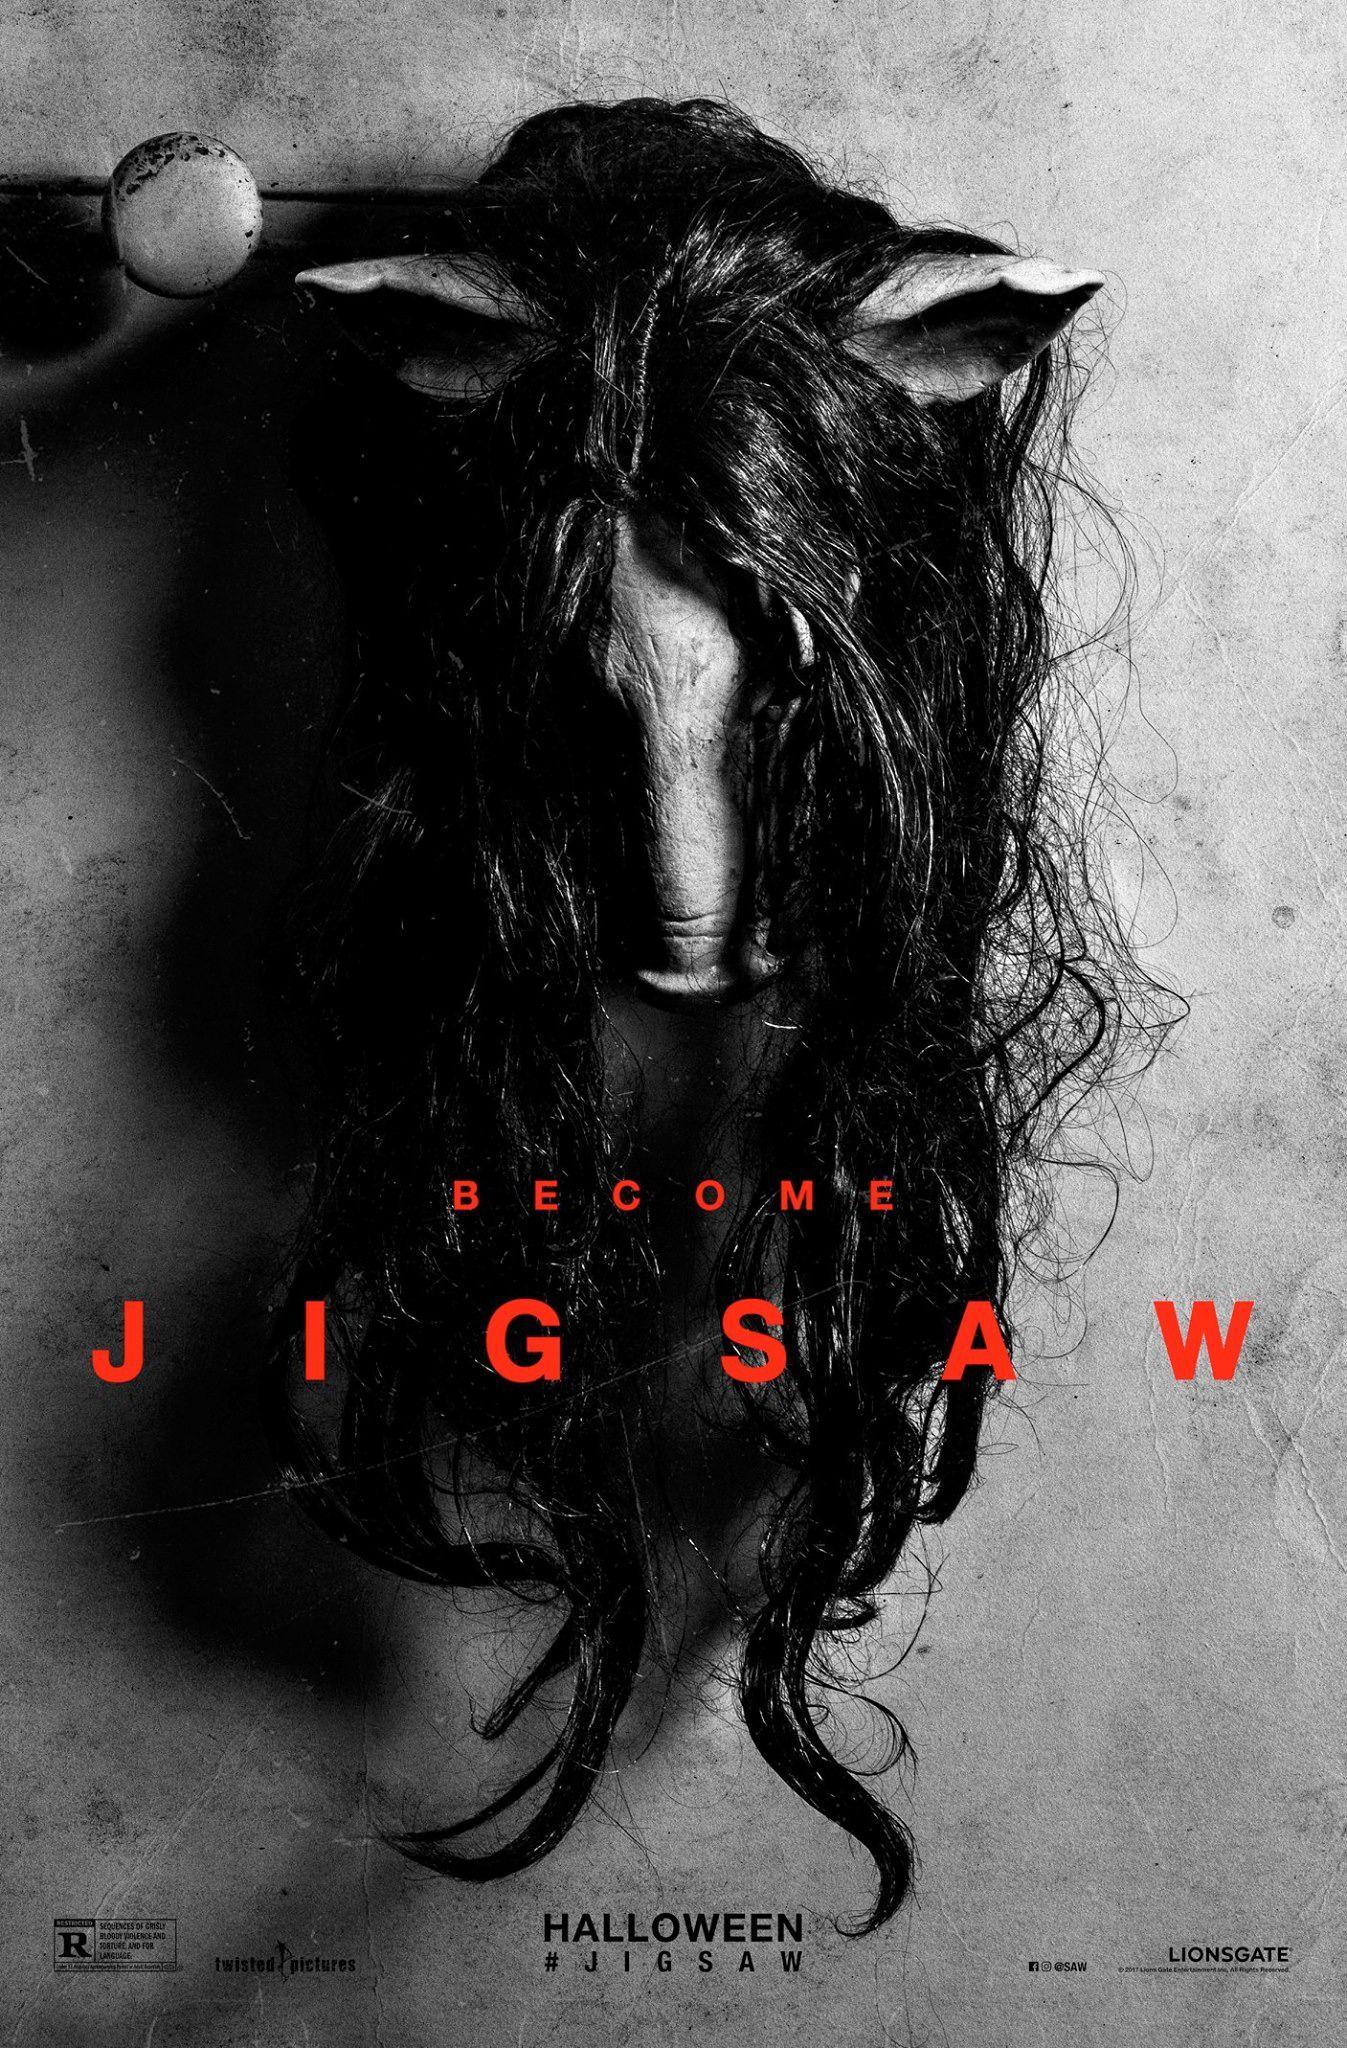 Jigsaw (2017) HD Wallpaper From Gallsource.com. Jigsaw movie